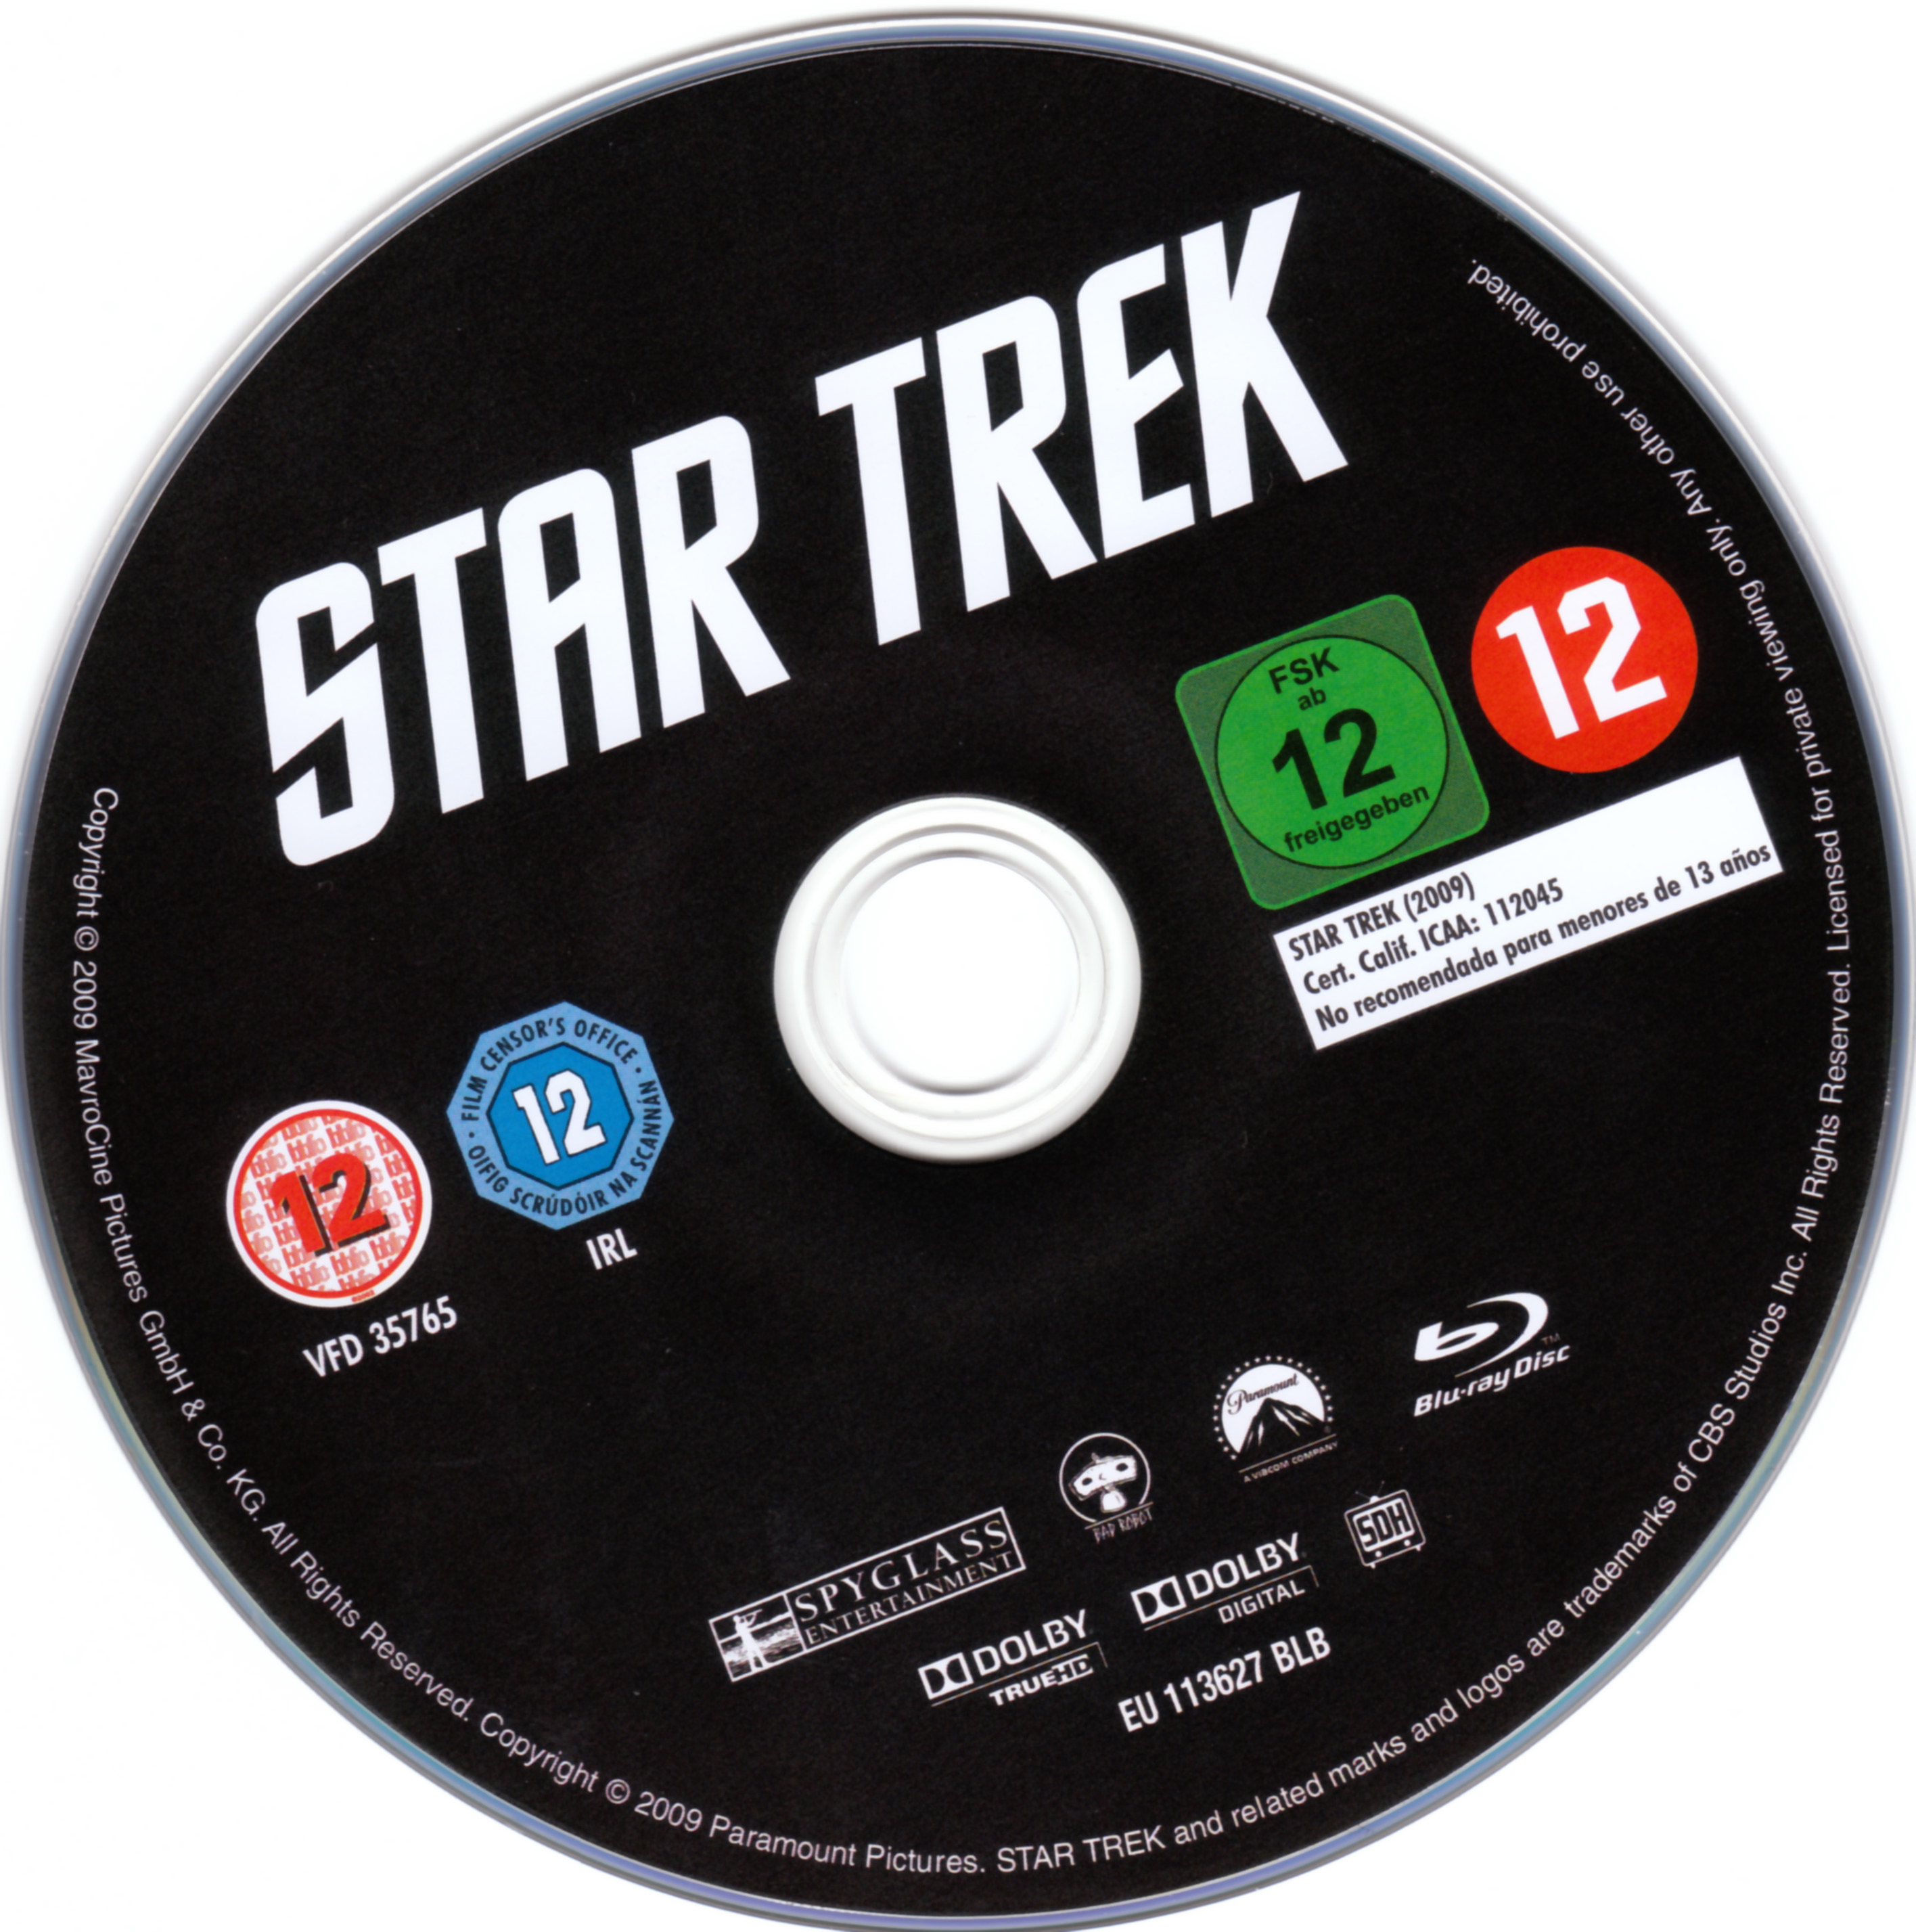 Star trek (2009) (BLU-RAY) DISC 1